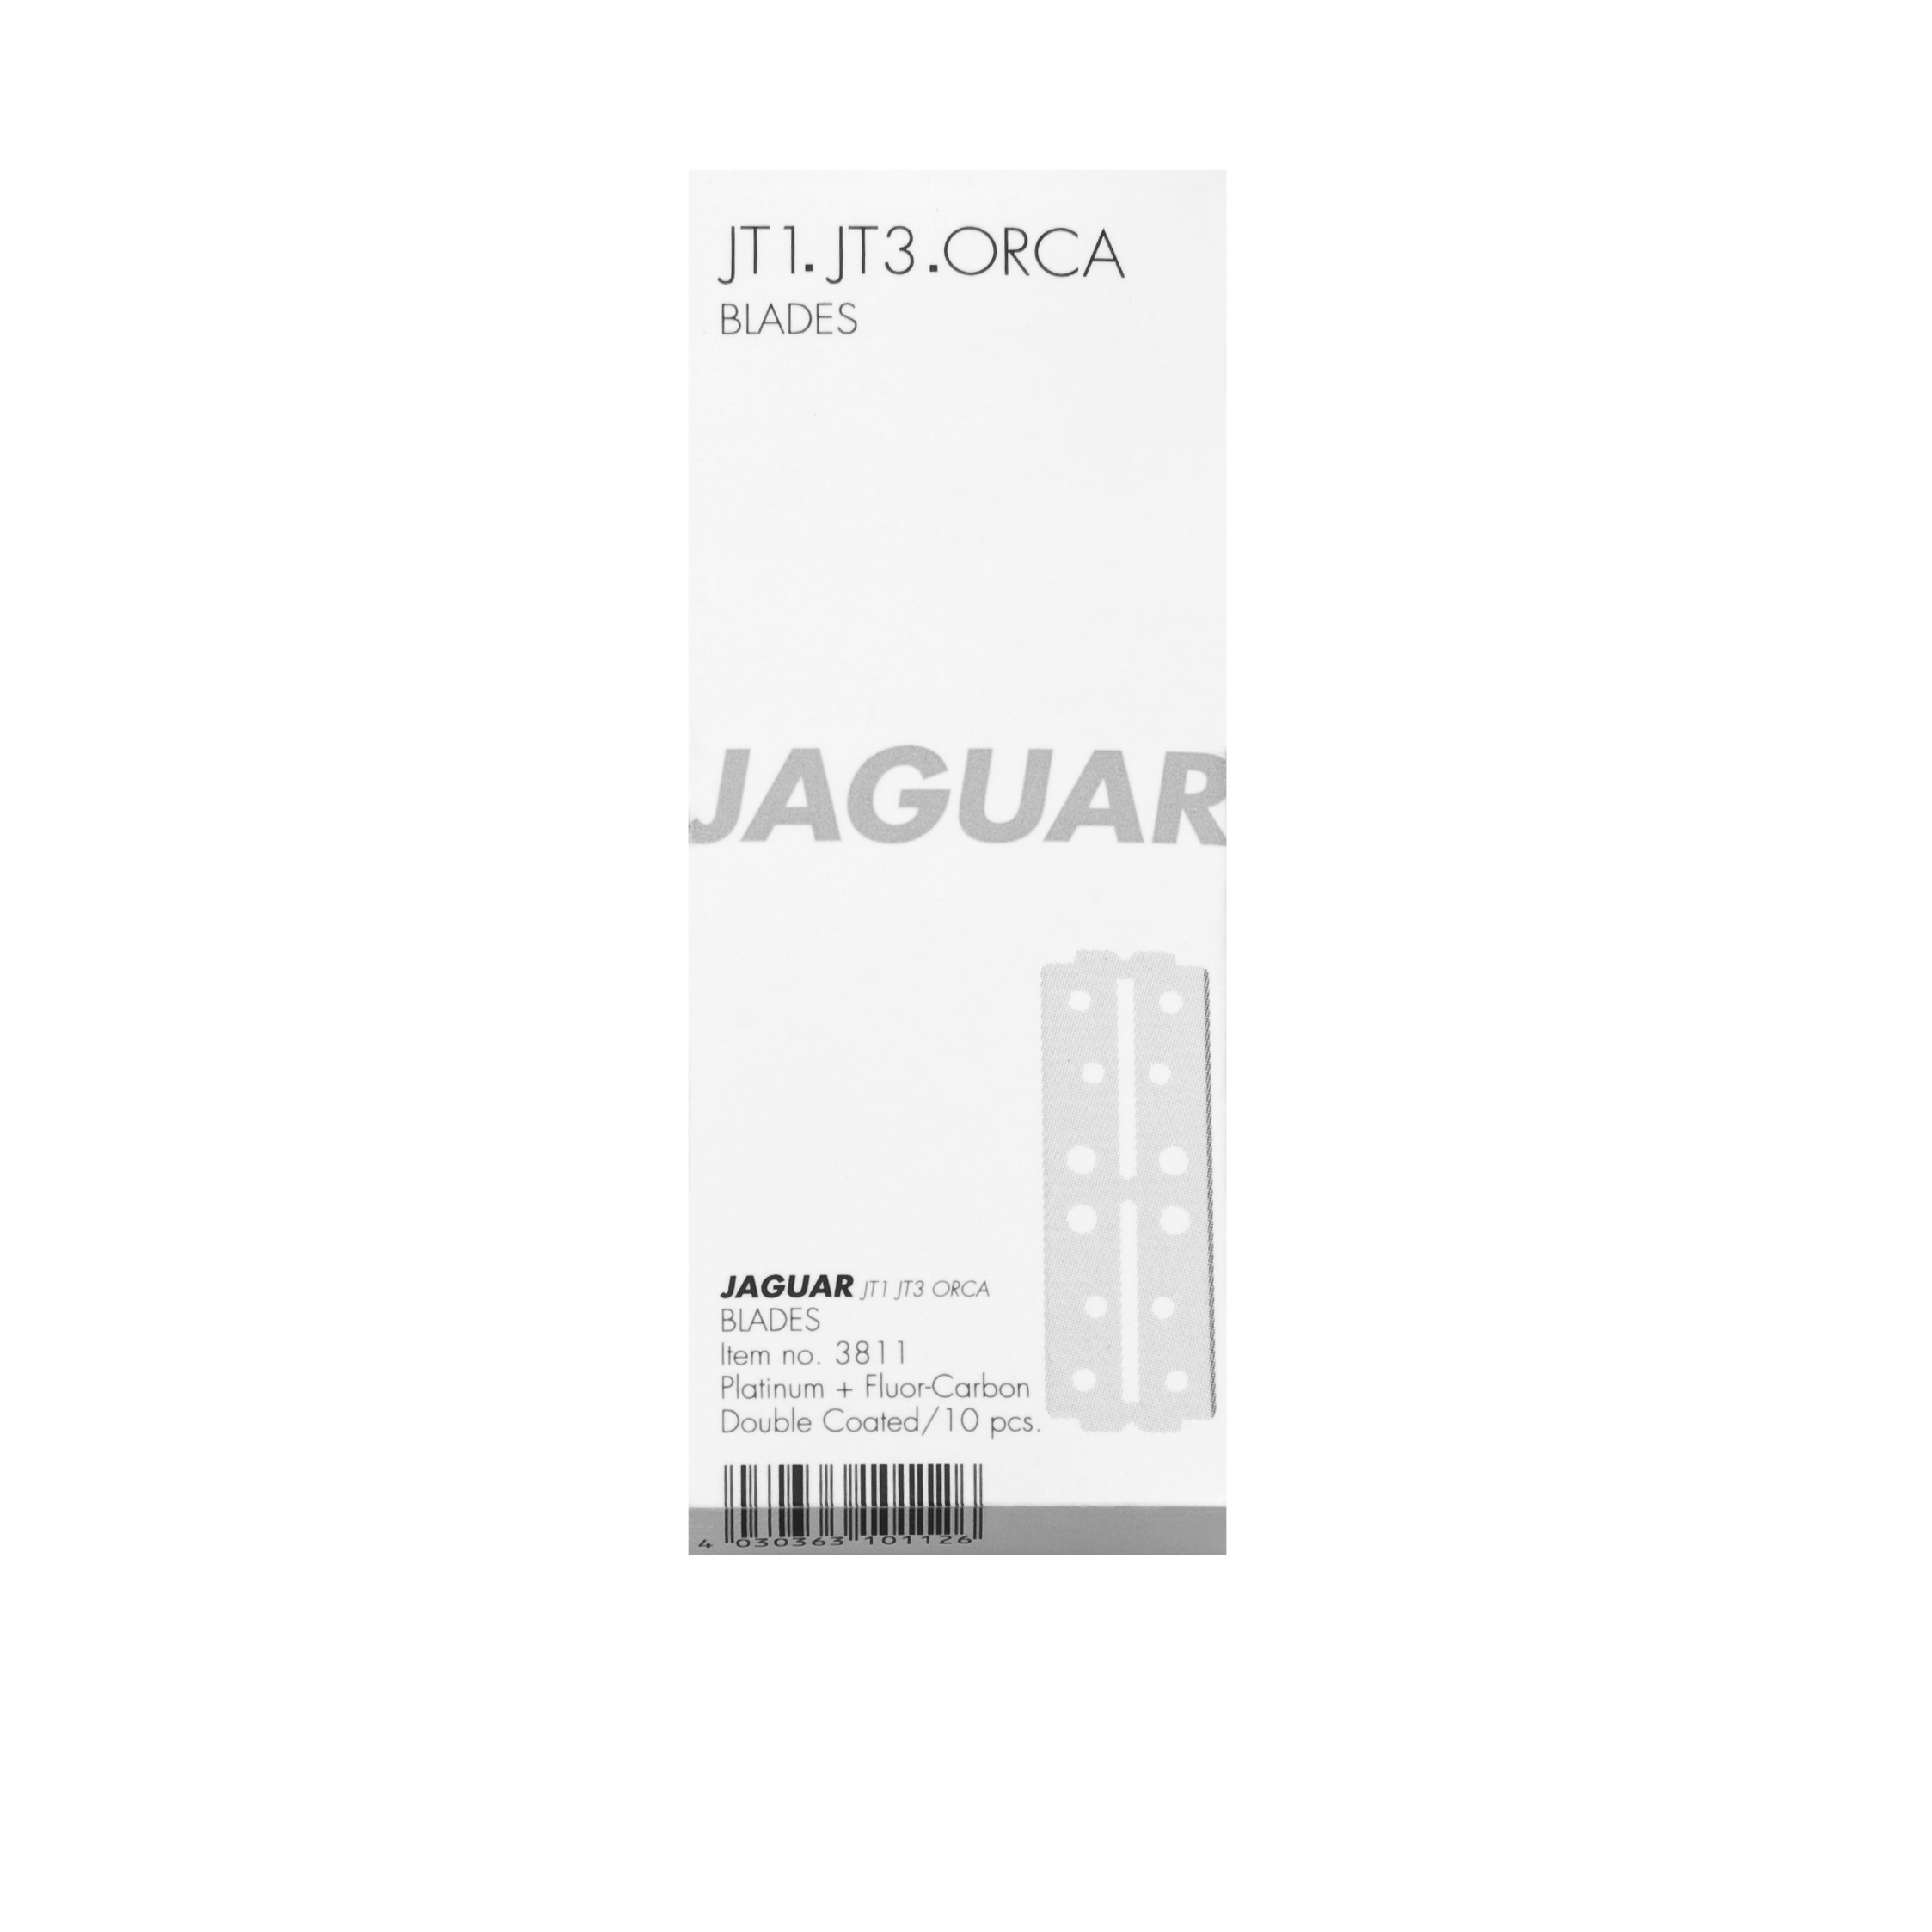 Zdjęcia - Wyposażenie salonów kosmetycznych Jaguar Razor JT 1 / JT 3 / Orca blad 